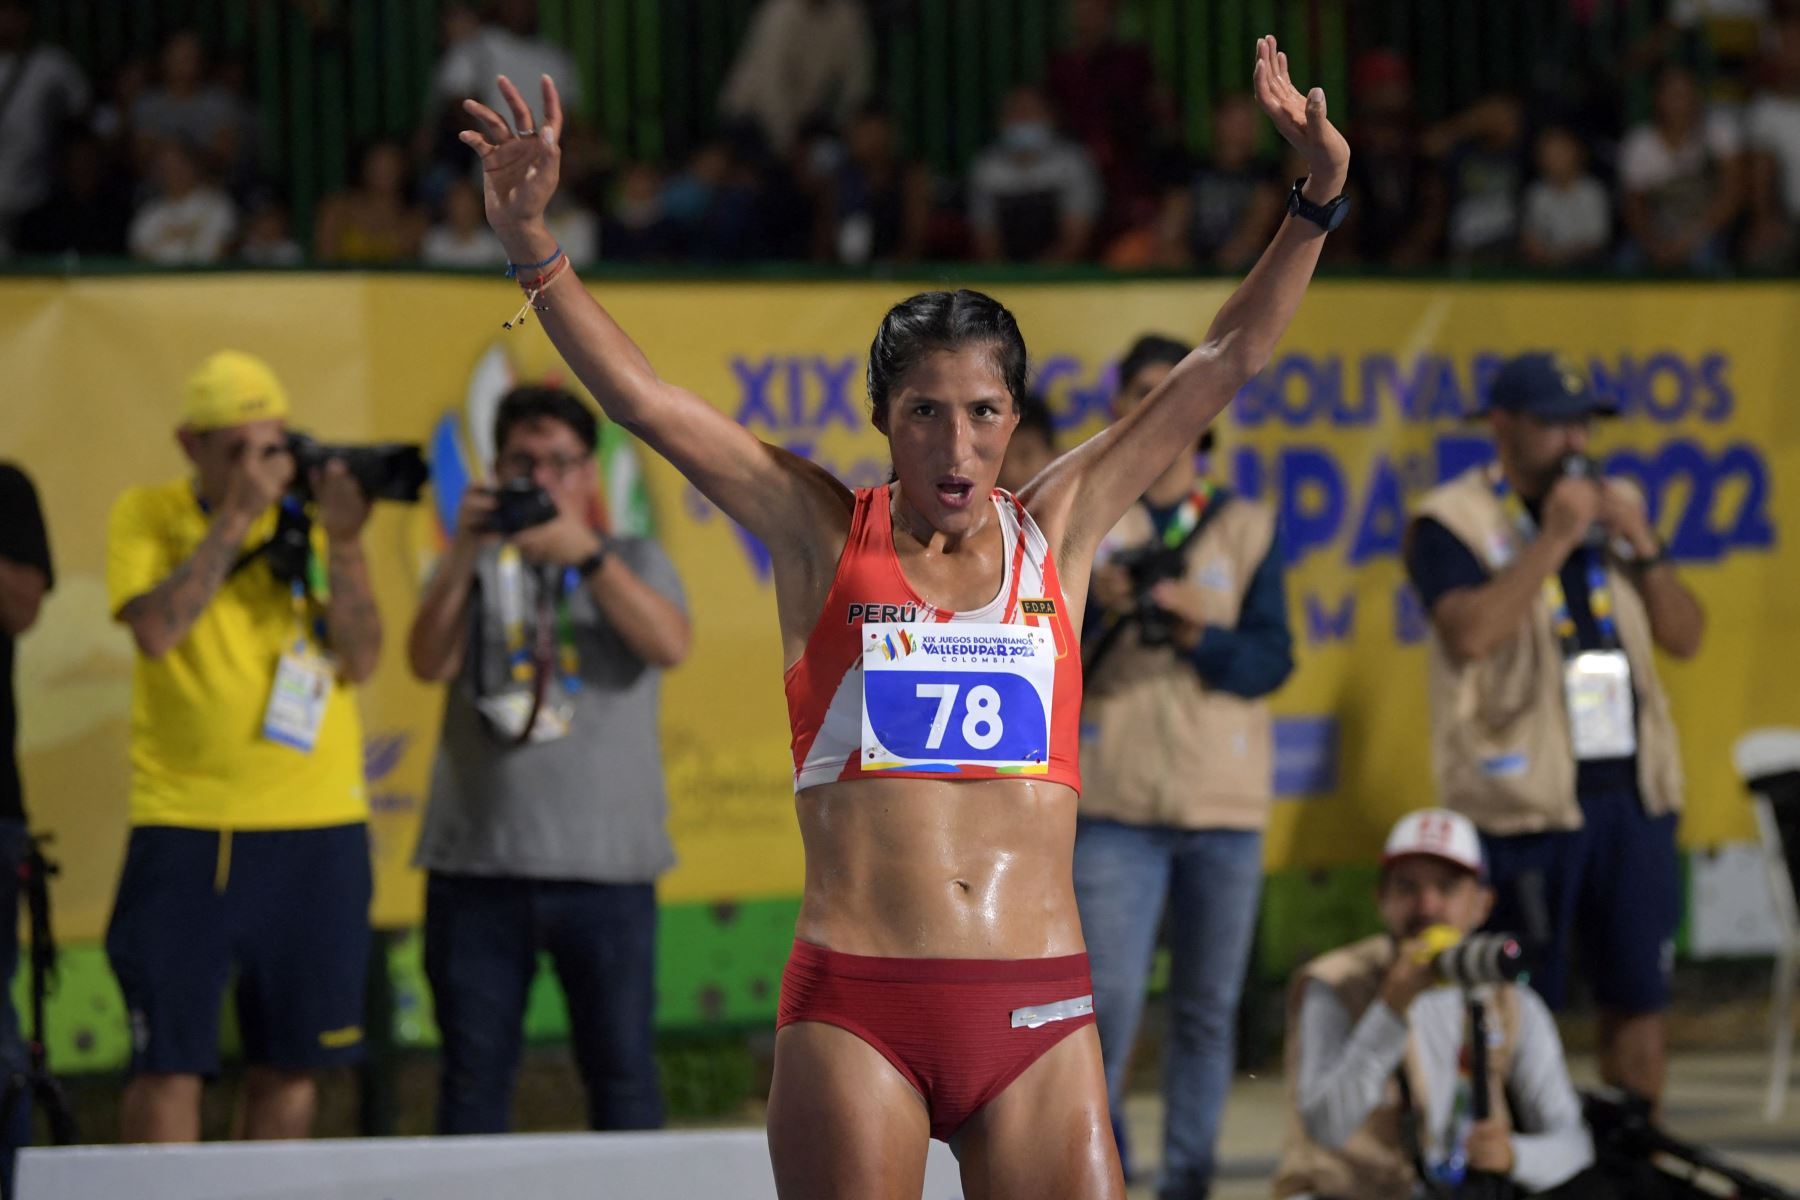 La atleta peruana Jovana de la Cruz celebra después de ganar la final femenina de 10000 m de los XIX Juegos Bolivarianos en Valledupar, departamento de Cesar, Colombia.
Foto: AFP